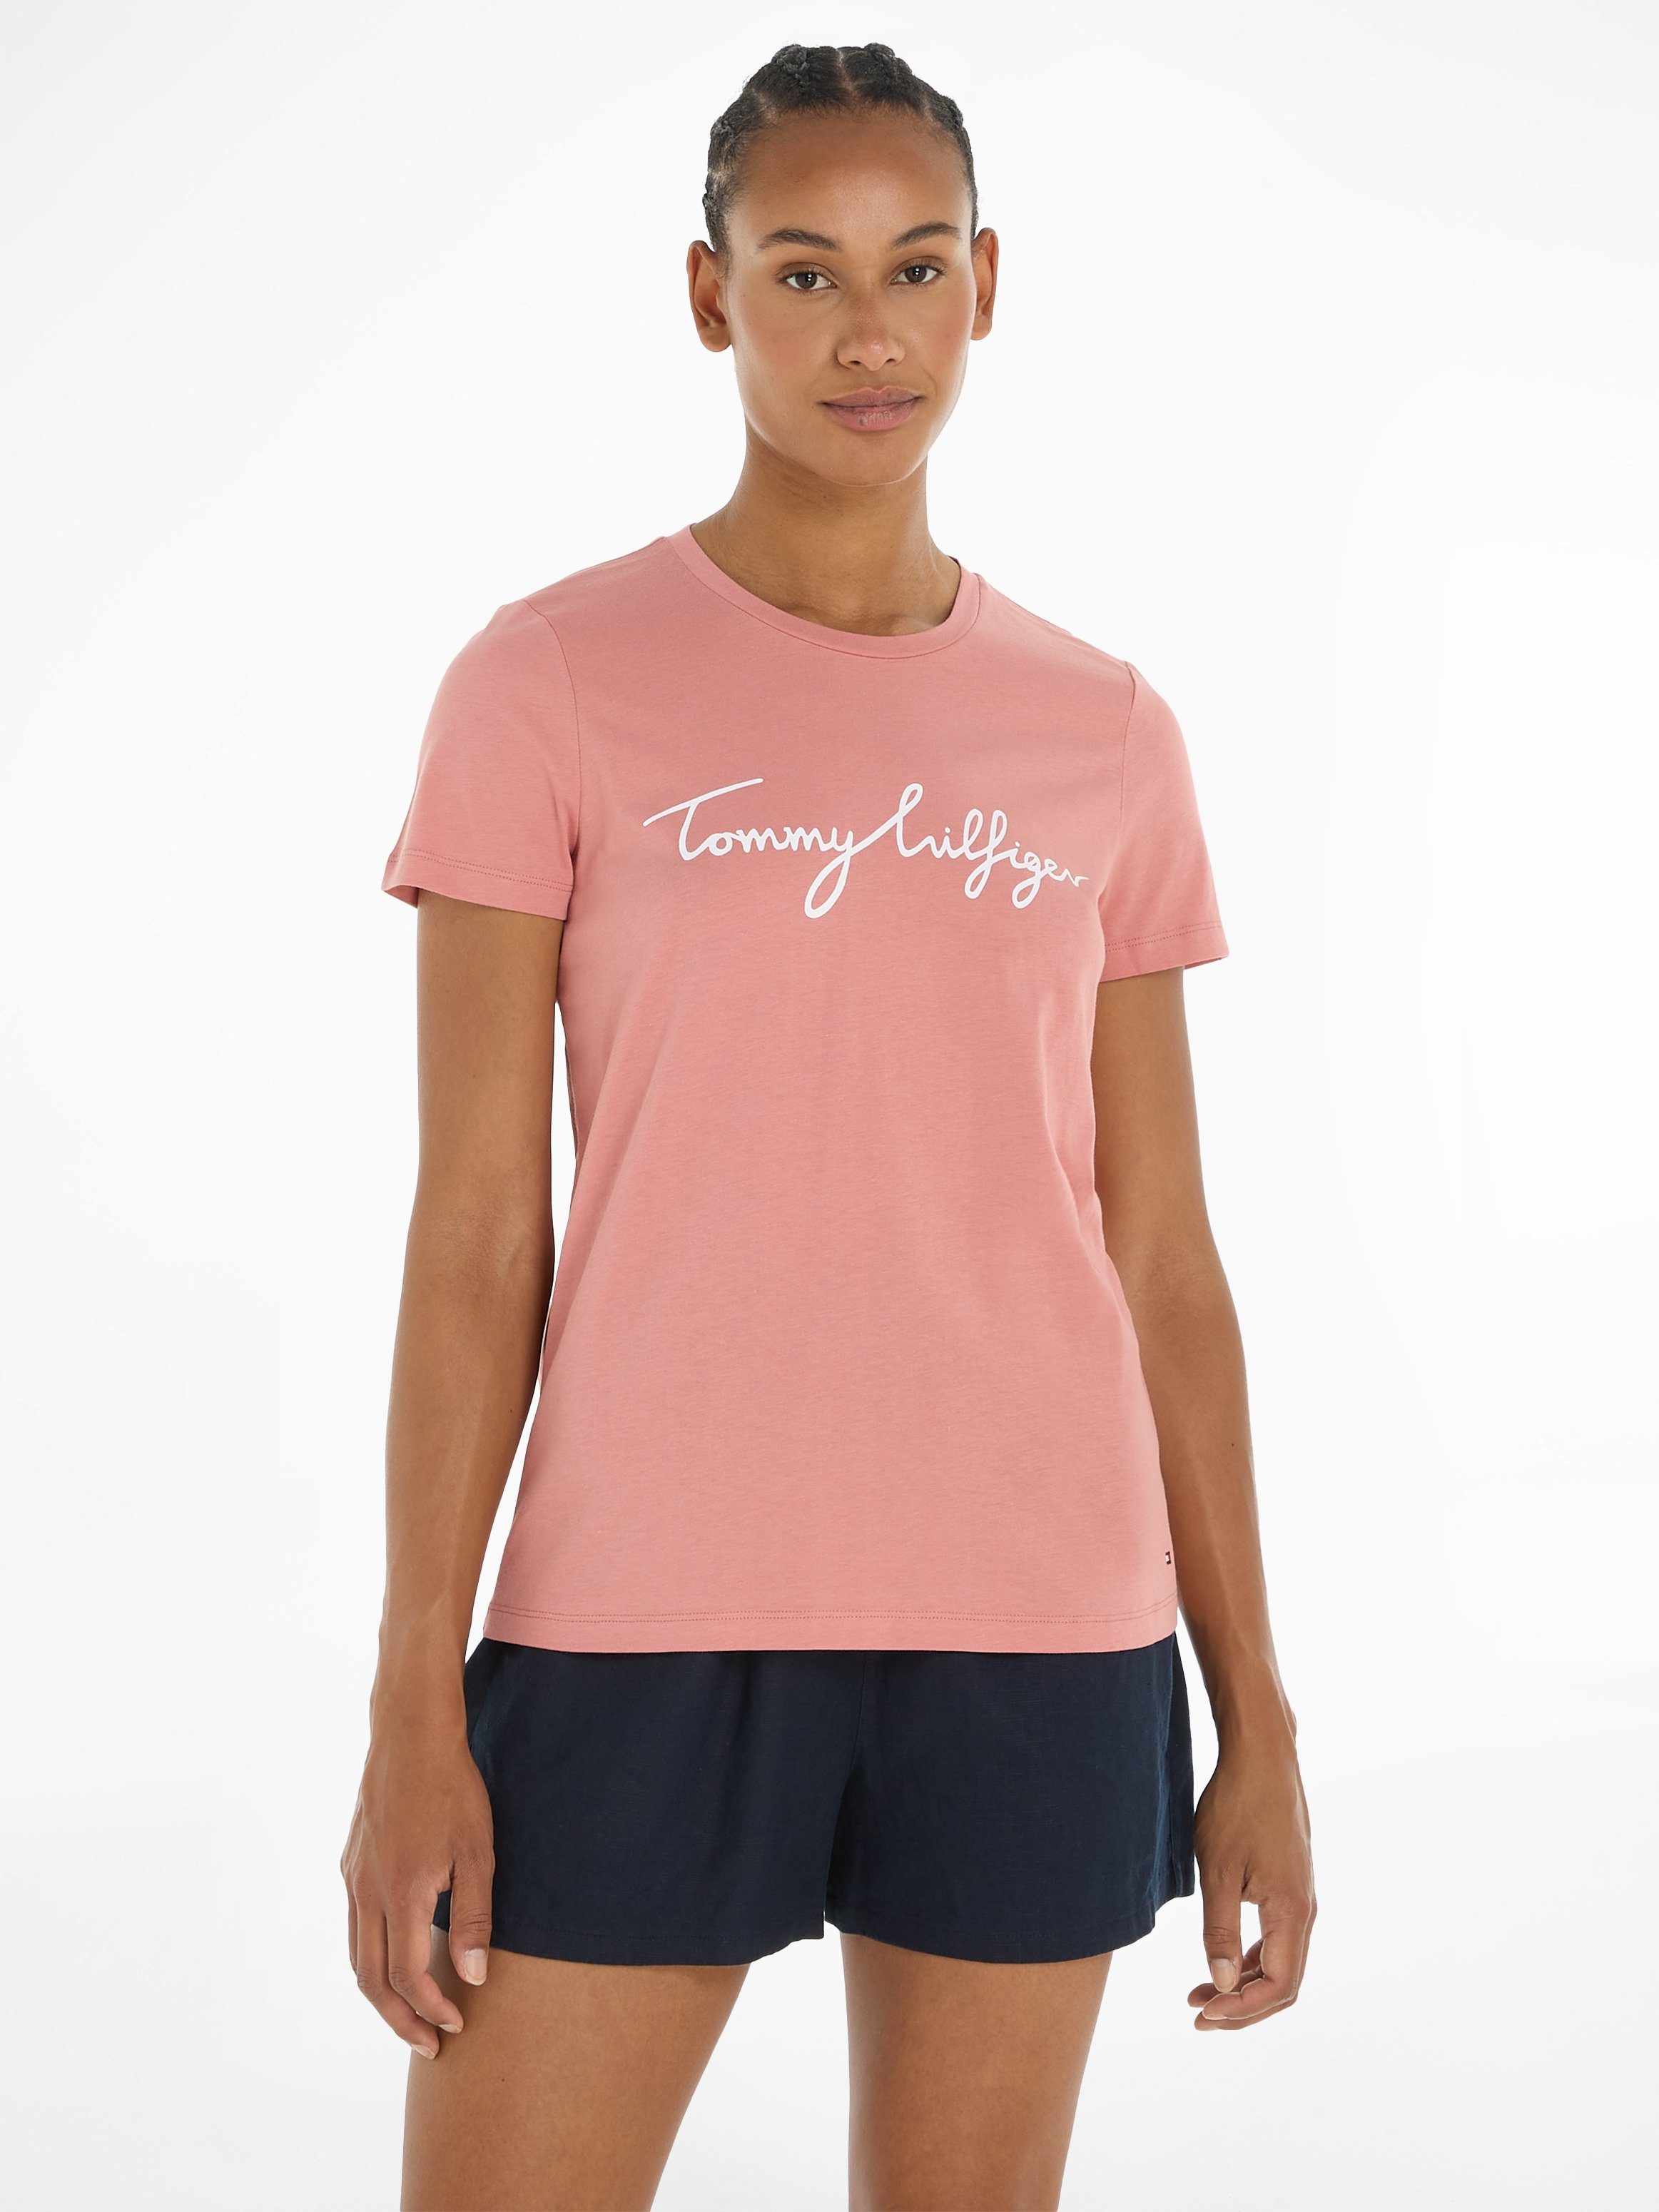 Rosa Tommy Hilfiger Damen T-Shirts online kaufen | OTTO